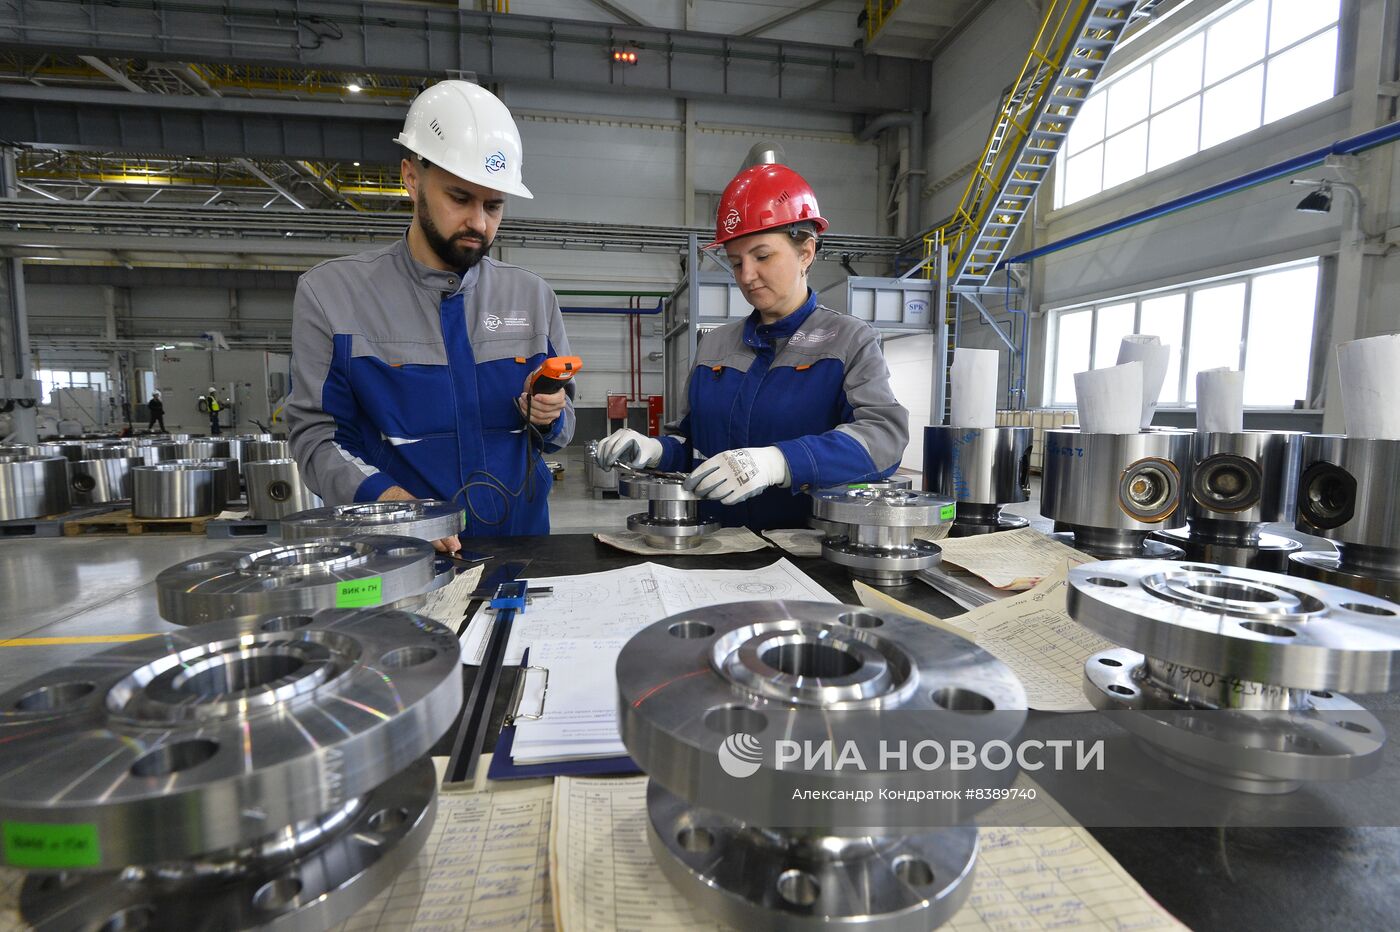 Уральский завод специального арматуростроения в Челябинске